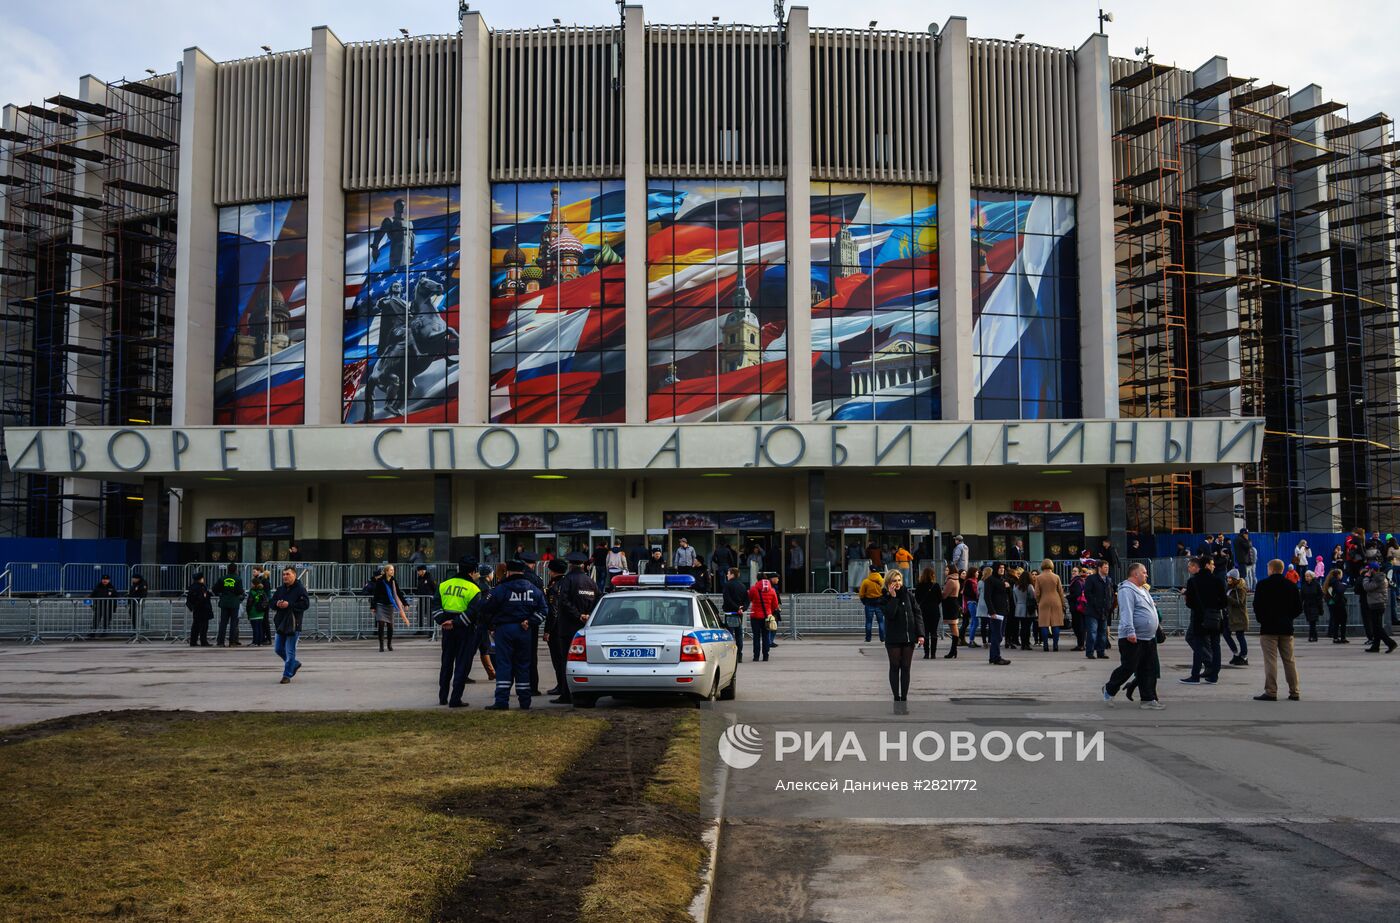 Дворец спорта "Юбилейный" в Санкт-Петербурге